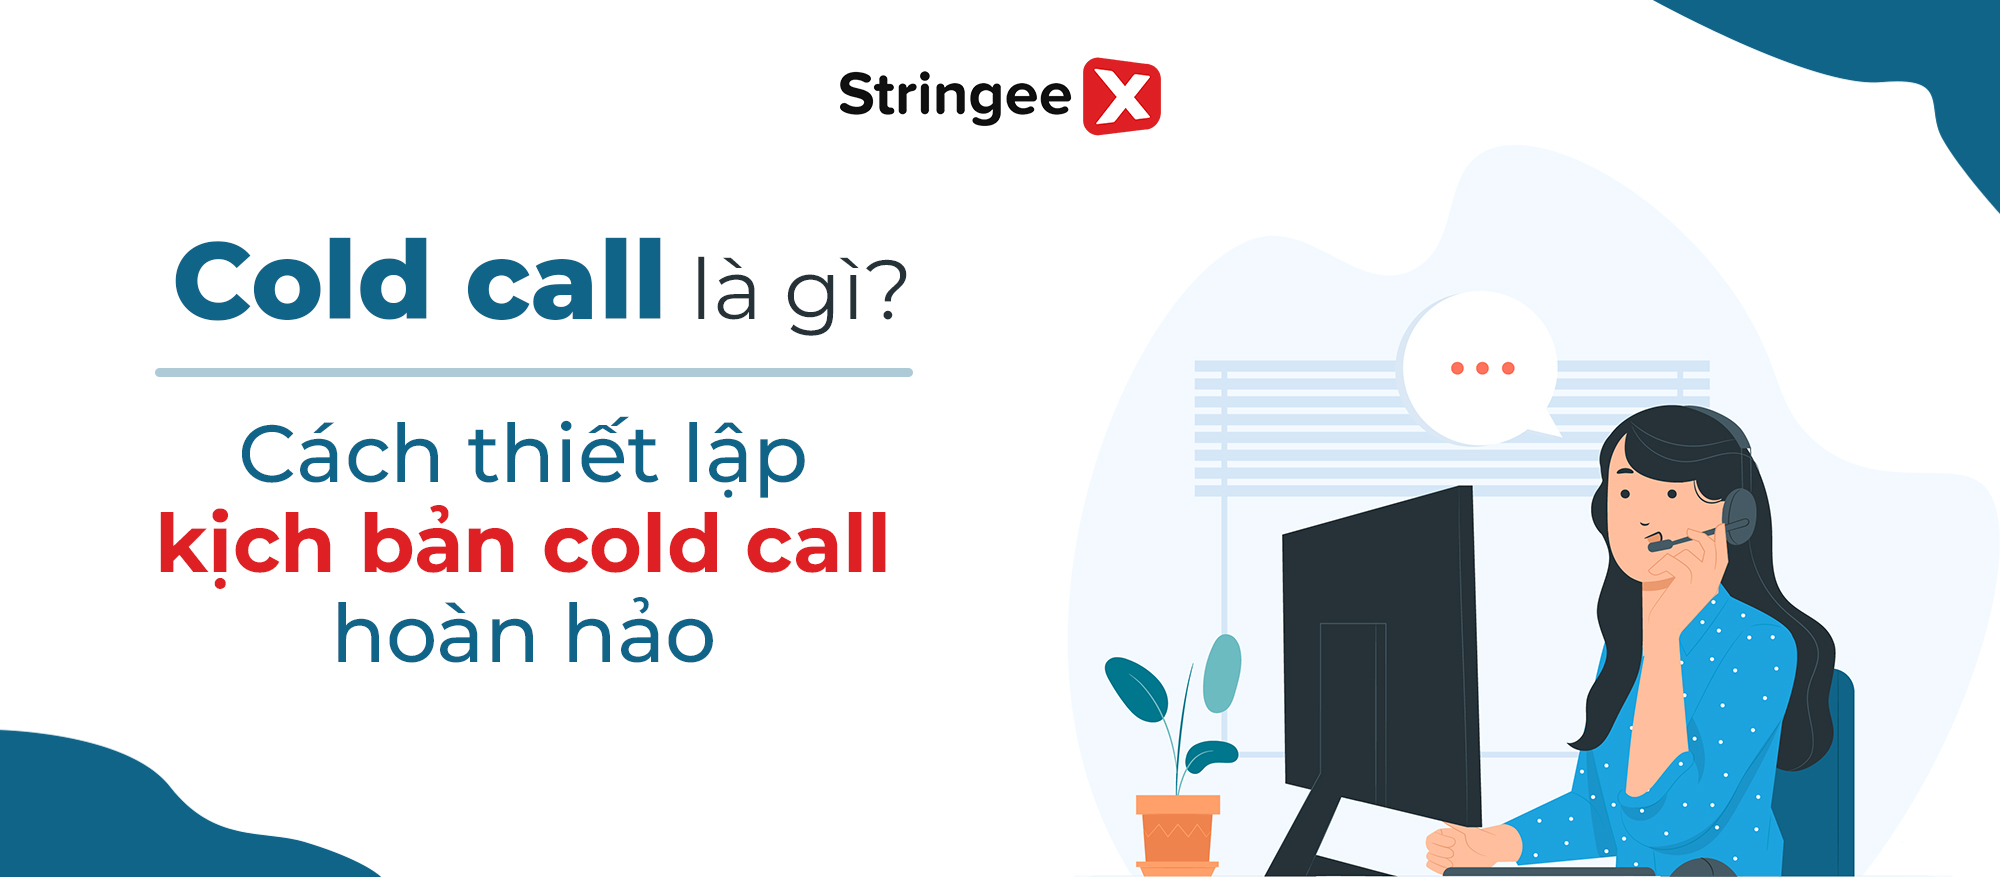 Cold call là gì? Cách thiết lập kịch bản cold call hoàn hảo